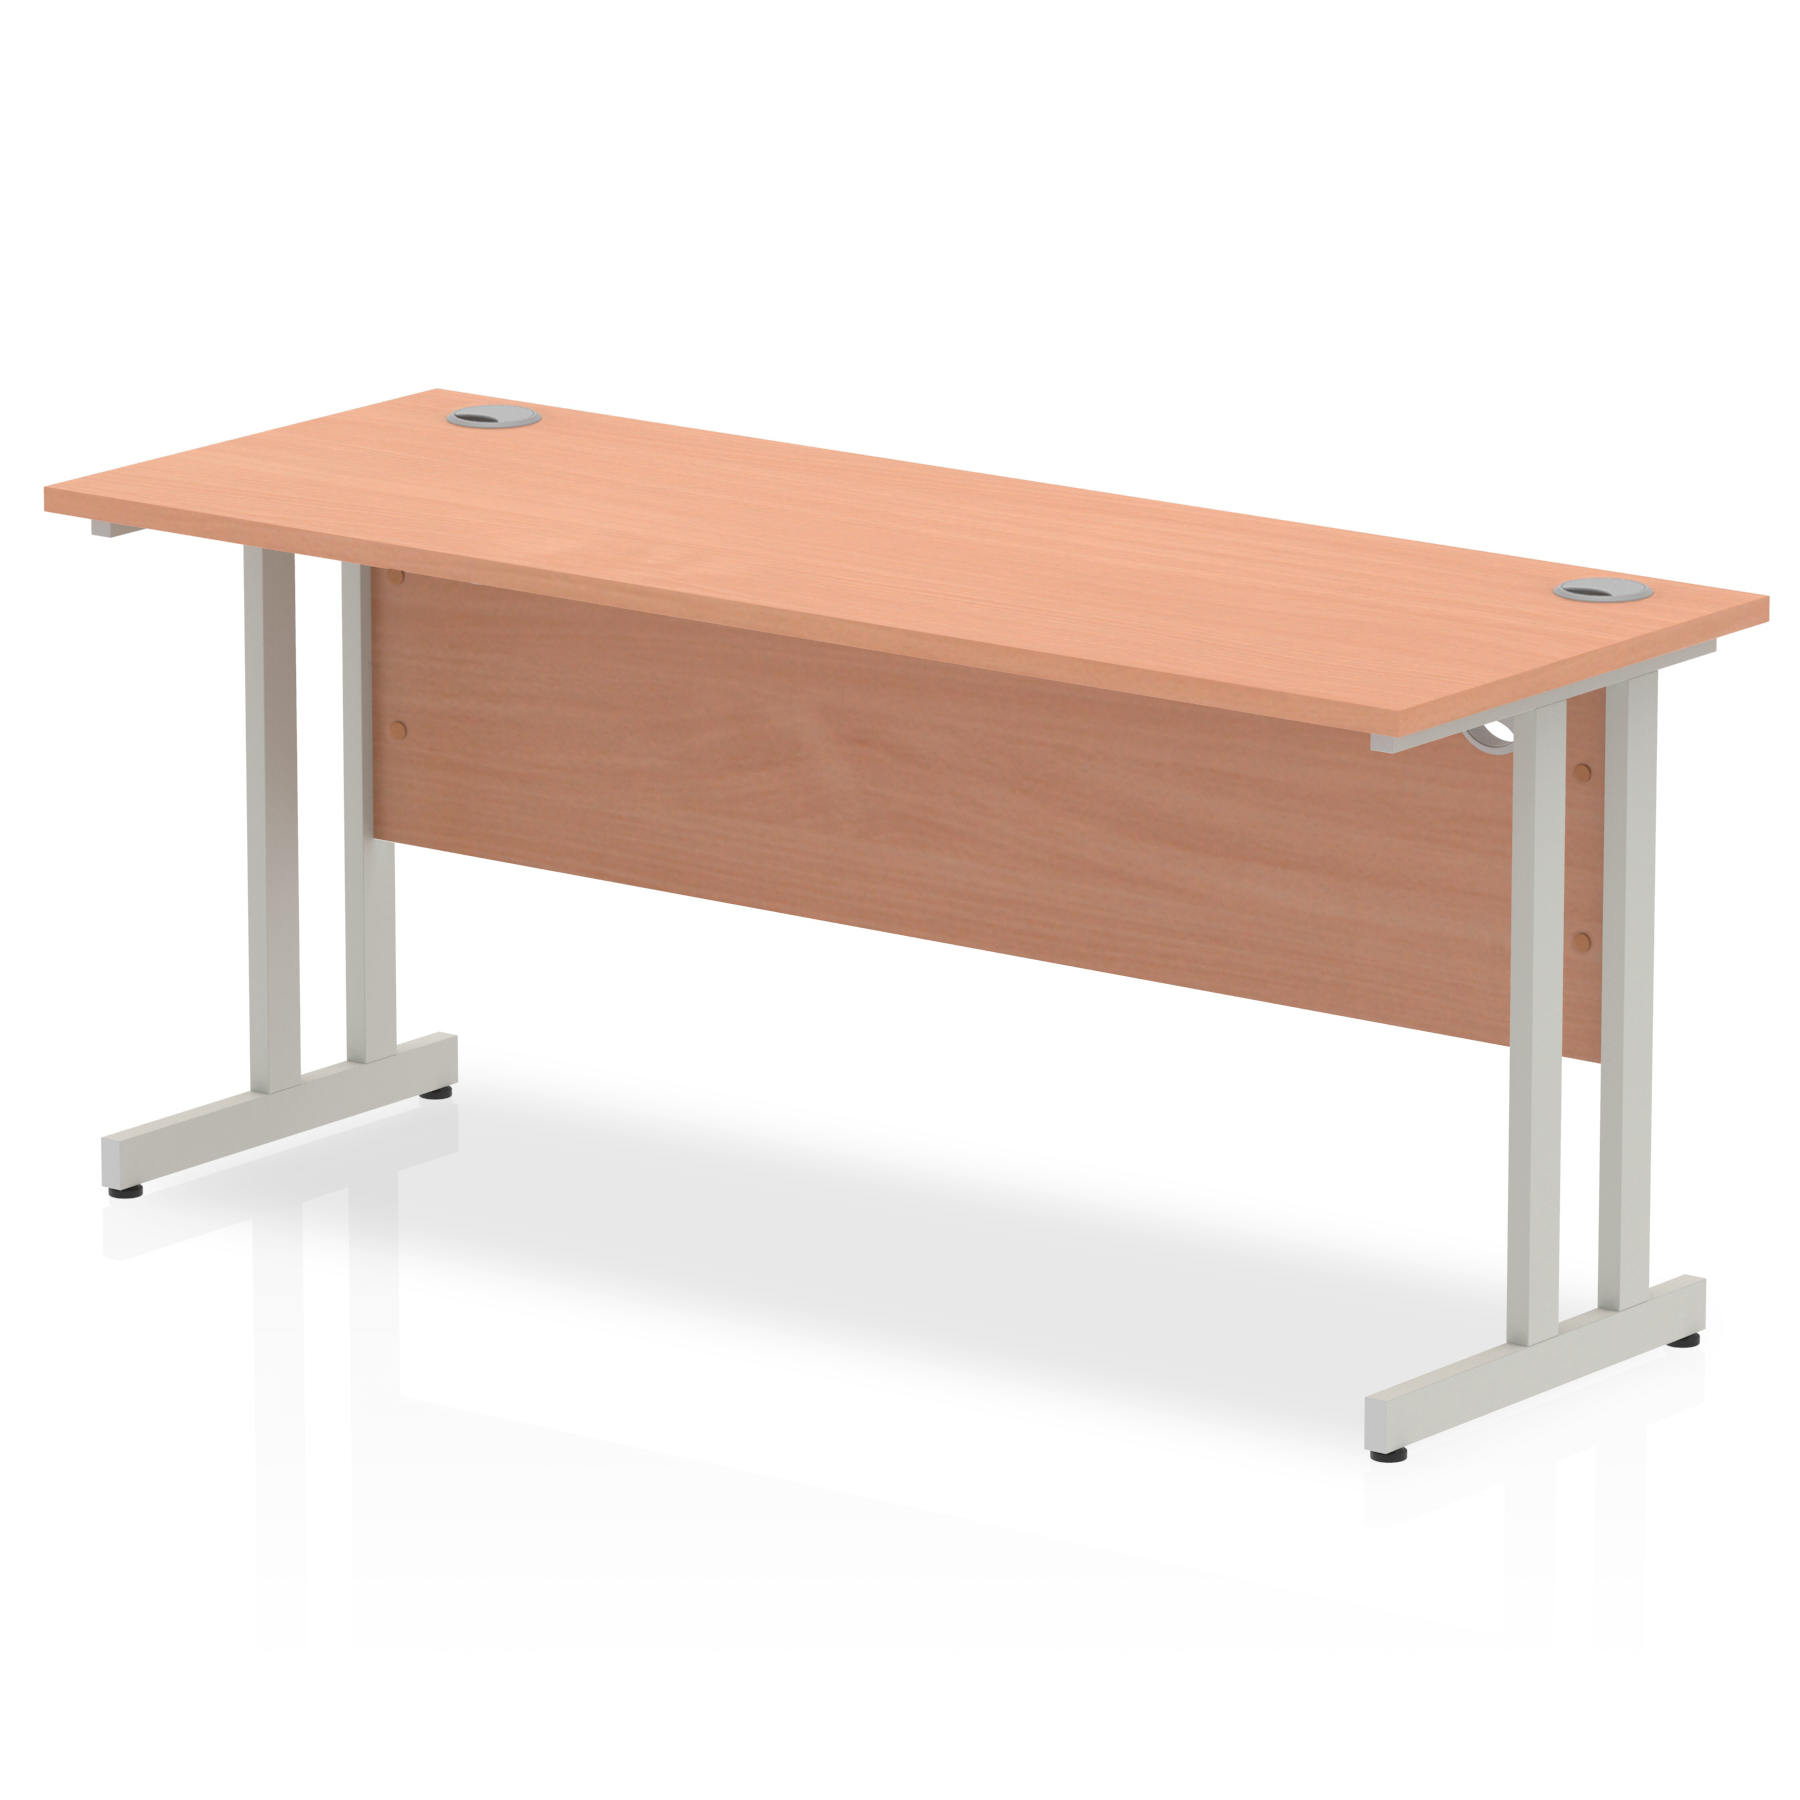 Budget  Desk  1600 x 800 cantilever desk Beech MFC  top silver legs 